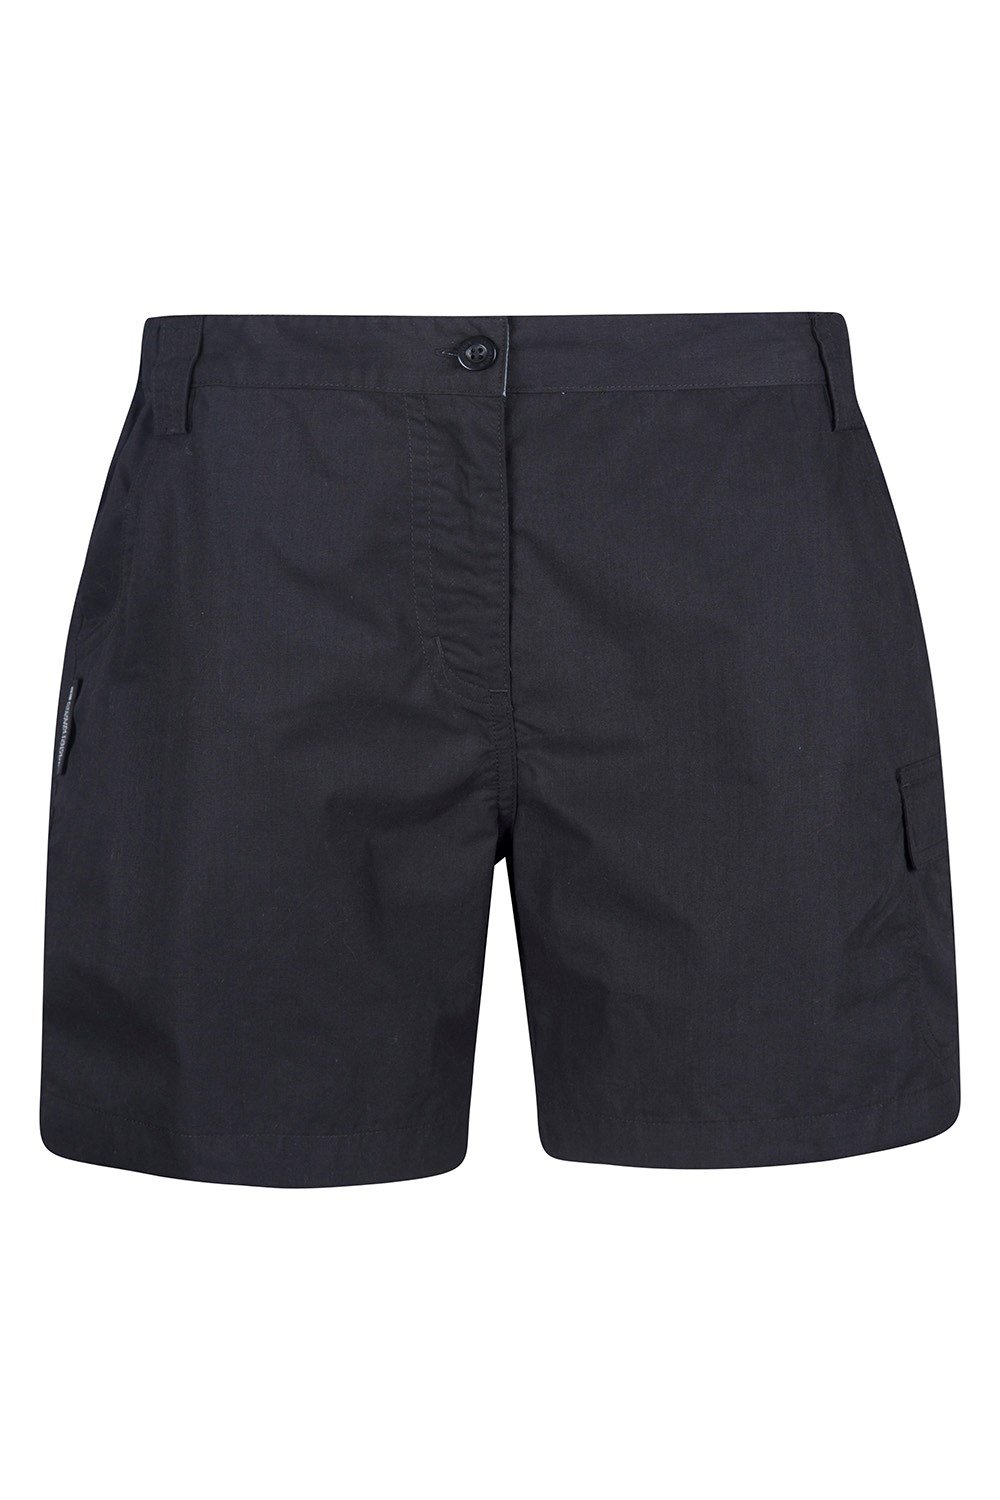 Womens Shorts | Womens Cargo Shorts | Mountain Warehouse GB